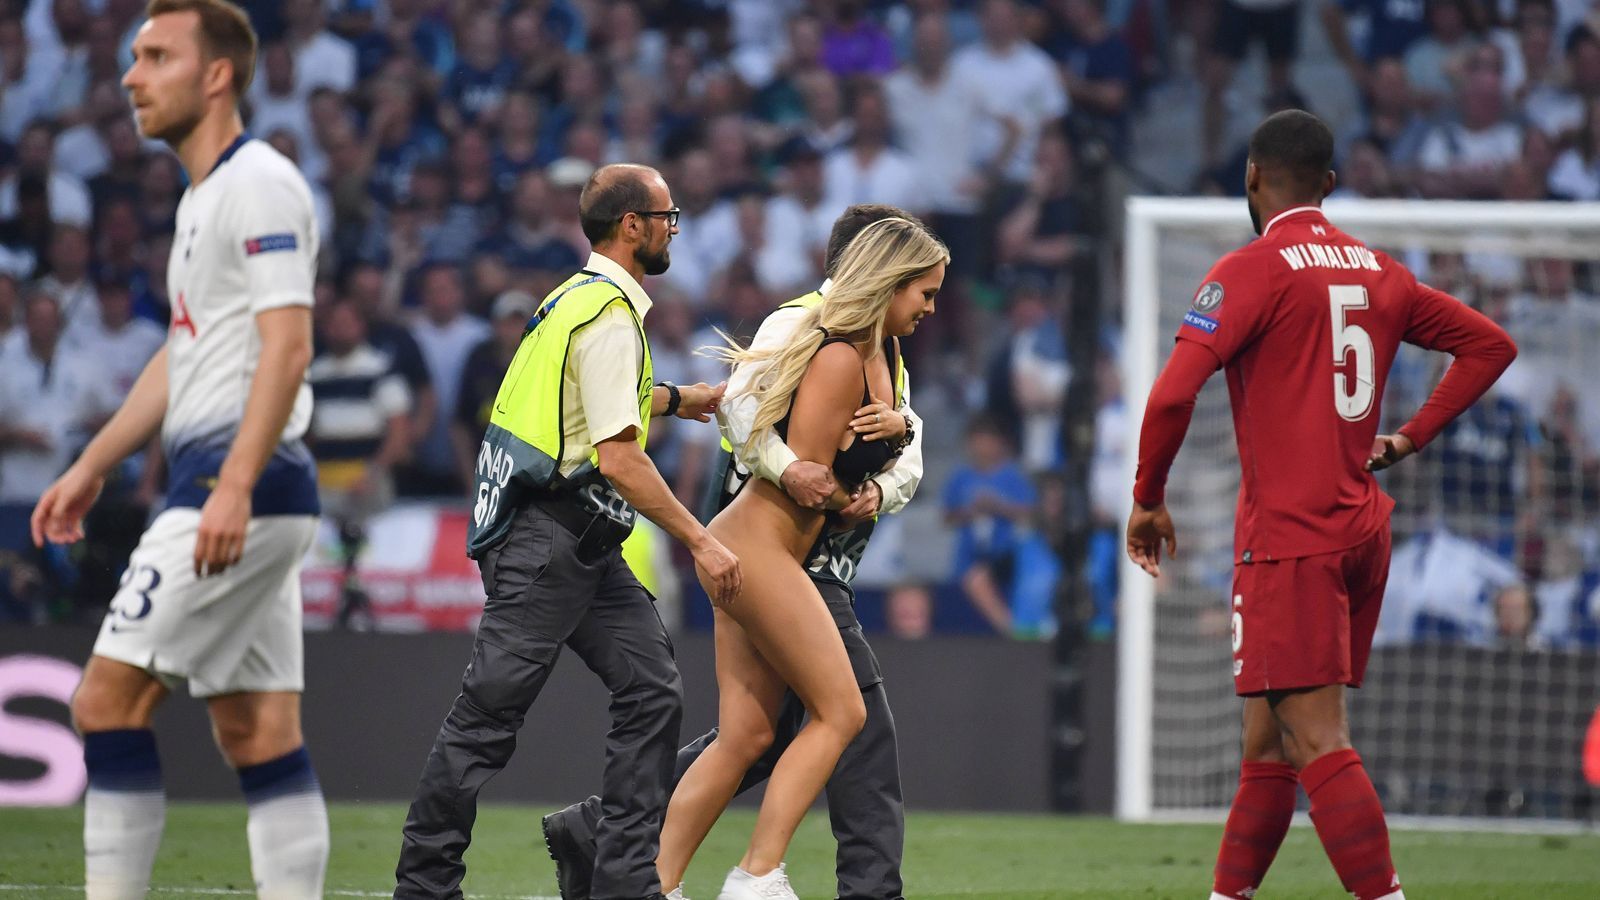 
                <strong>Final-Flitzerin: Das steckt hinter ihrem Auftritt</strong><br>
                Auch Zdorovetskiy war stolz auf seine Lebensgefährtin: "Ich kann es kaum erwarten, dich zu heiraten", twitterte er. Er verfolgte das ganze übrigens auch im Stadion, obwohl er eigentlich ein weltweites Verbot hat. Doch in einem Video ist er im Madrider Fußball-Tempel zu sehen - er ruft "that's my fucking girlfriend" als die Flitzerin losstürmt. Sie schrieb wiederum bei Instagram: "Das Leben ist zum Leben da, und um verrückte Dinge zu tun, an die du dich für immer erinnerst."
              